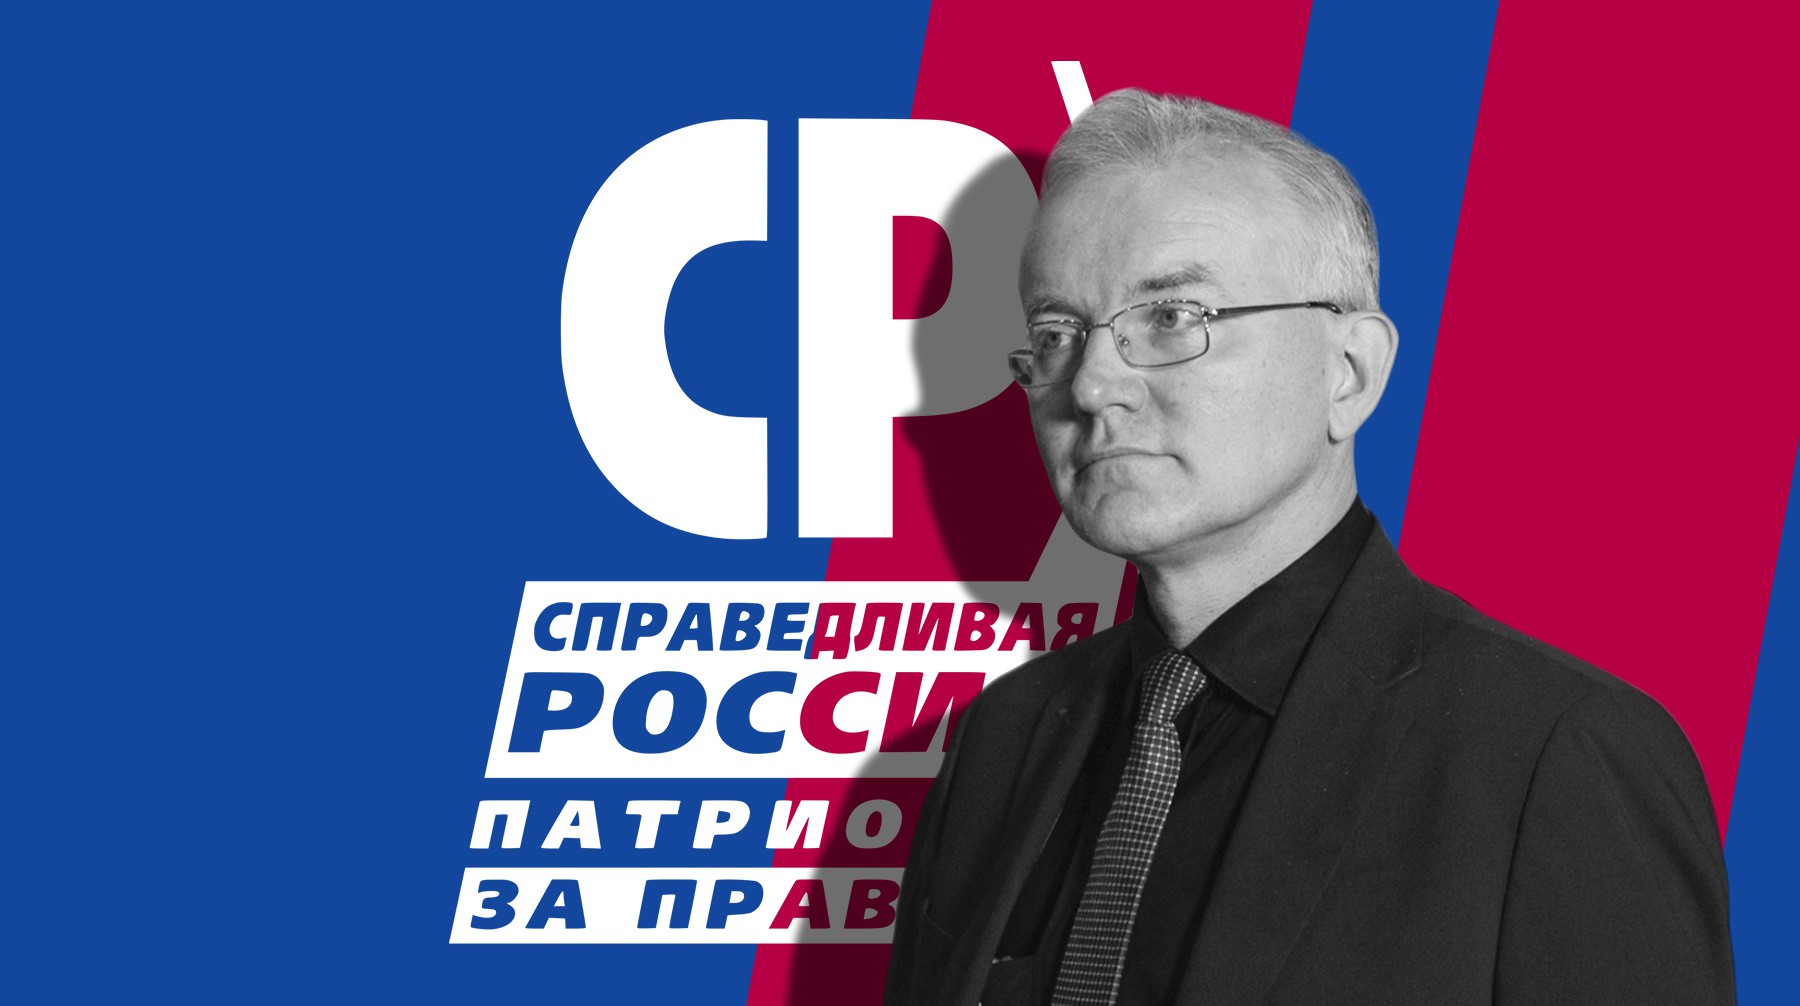 Dailystorm - Демарш против Олега Шеина: почему астраханское отделение «Справедливой России» покинули сразу пять председателей?